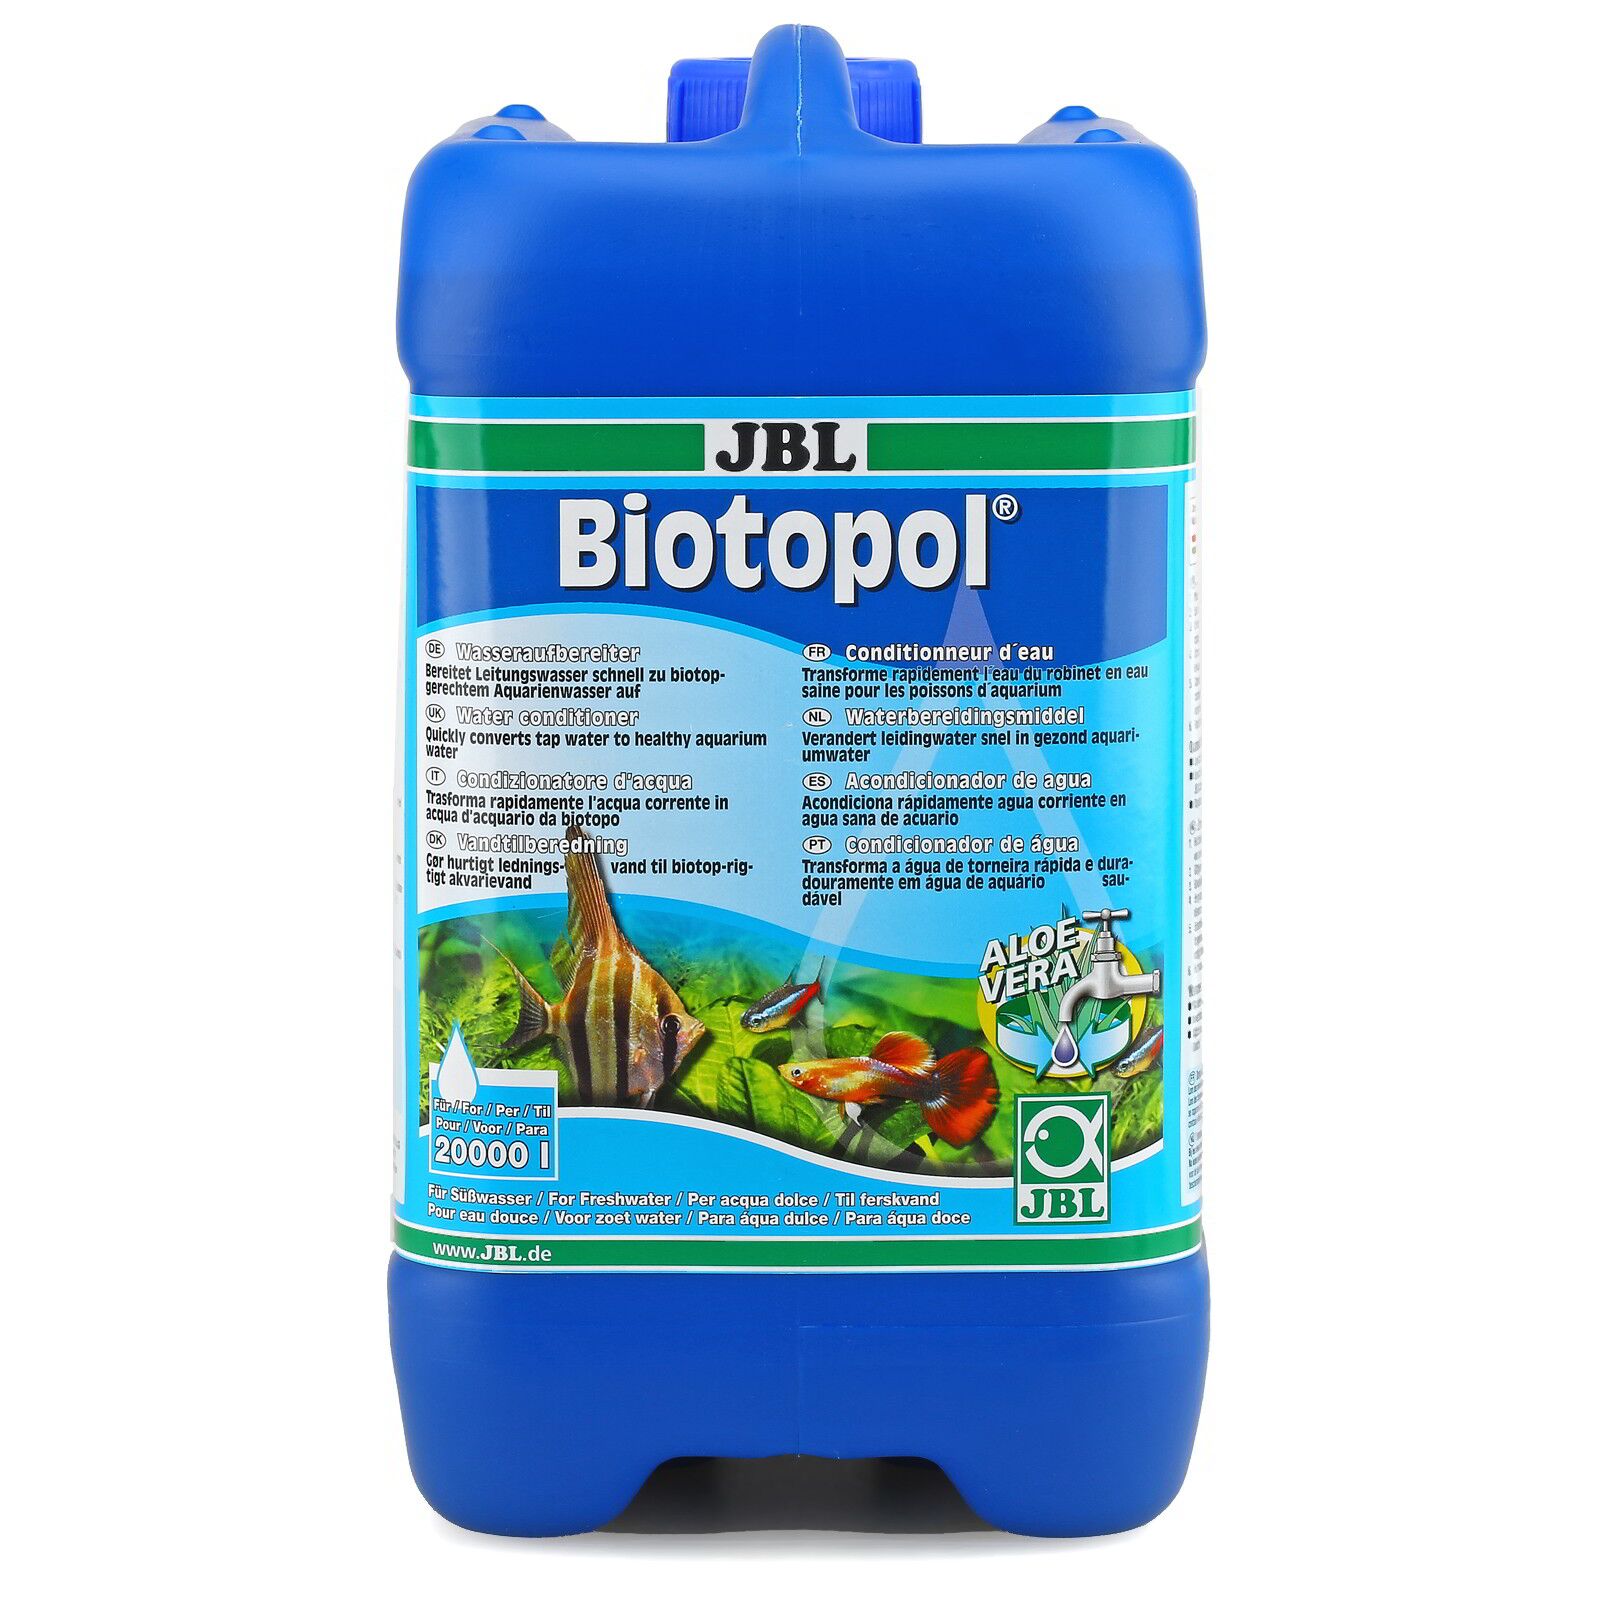 JBL Biotopol 250ml conditionneur d'eau métaux lourds - Materiel